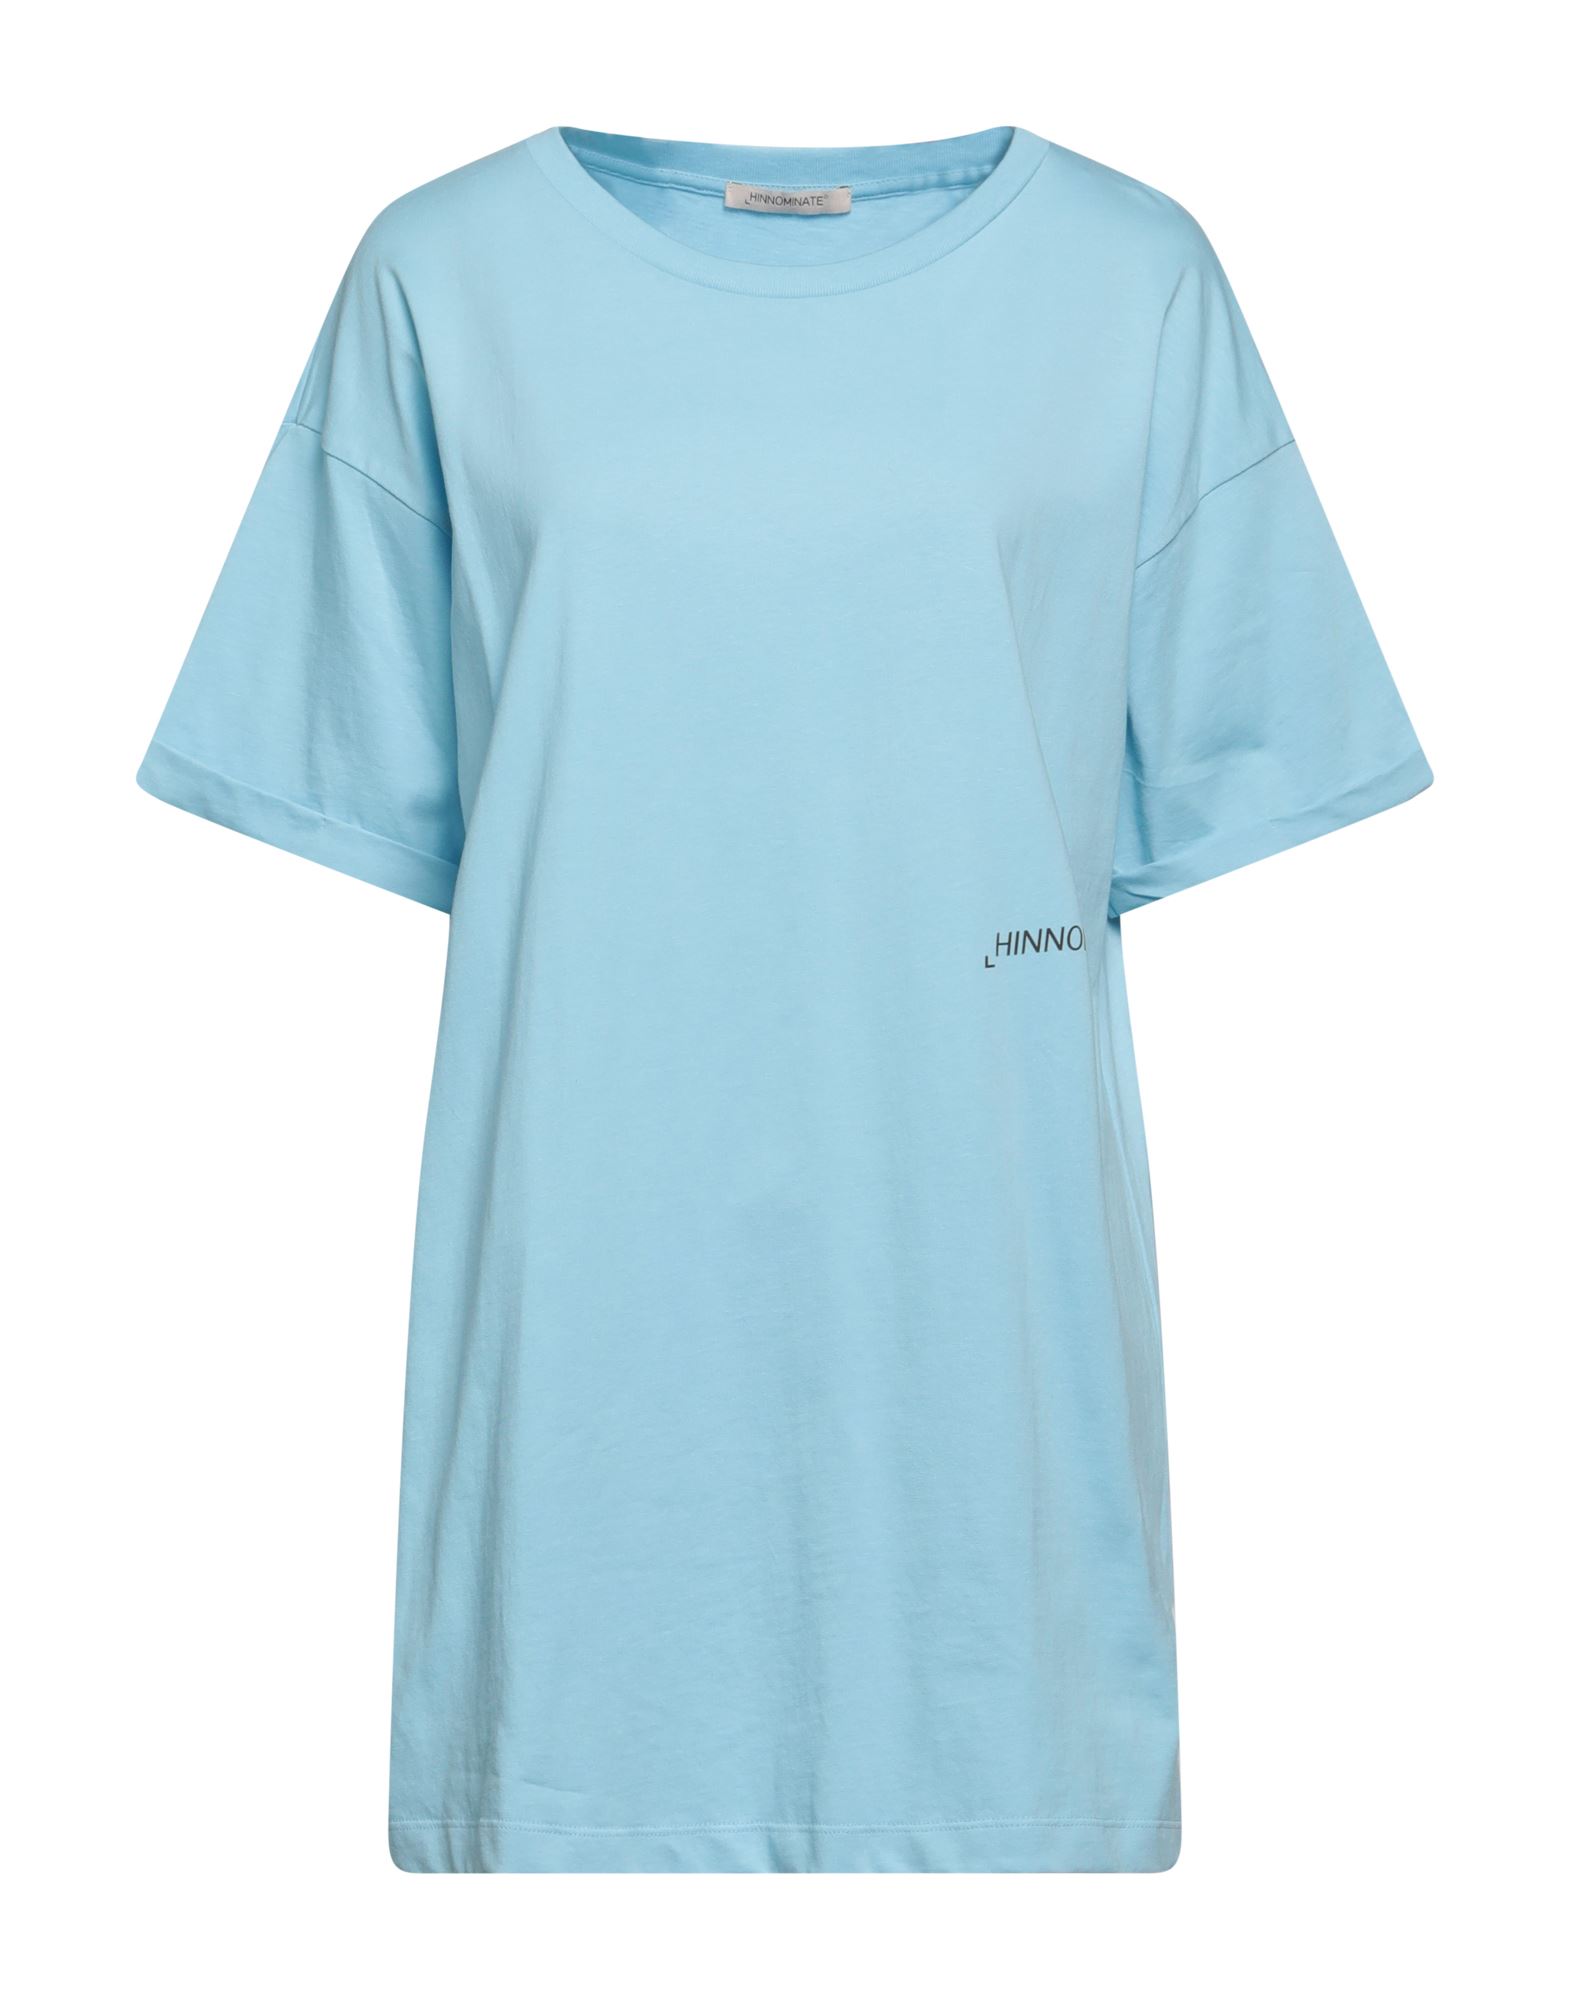 HINNOMINATE T-shirts Damen Himmelblau von HINNOMINATE